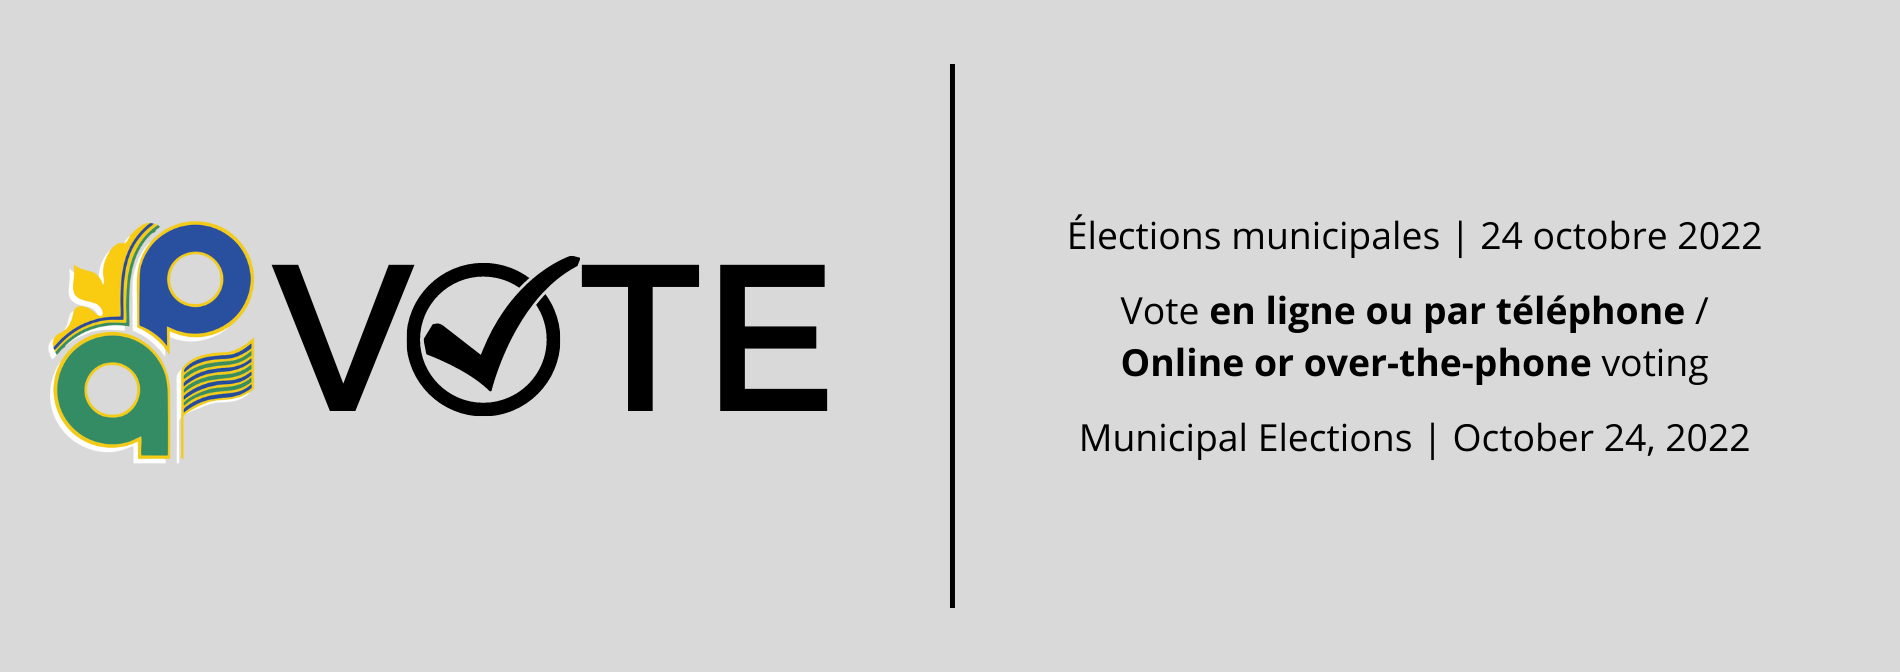 Votez aux élections municpales du 24 octobre 2022